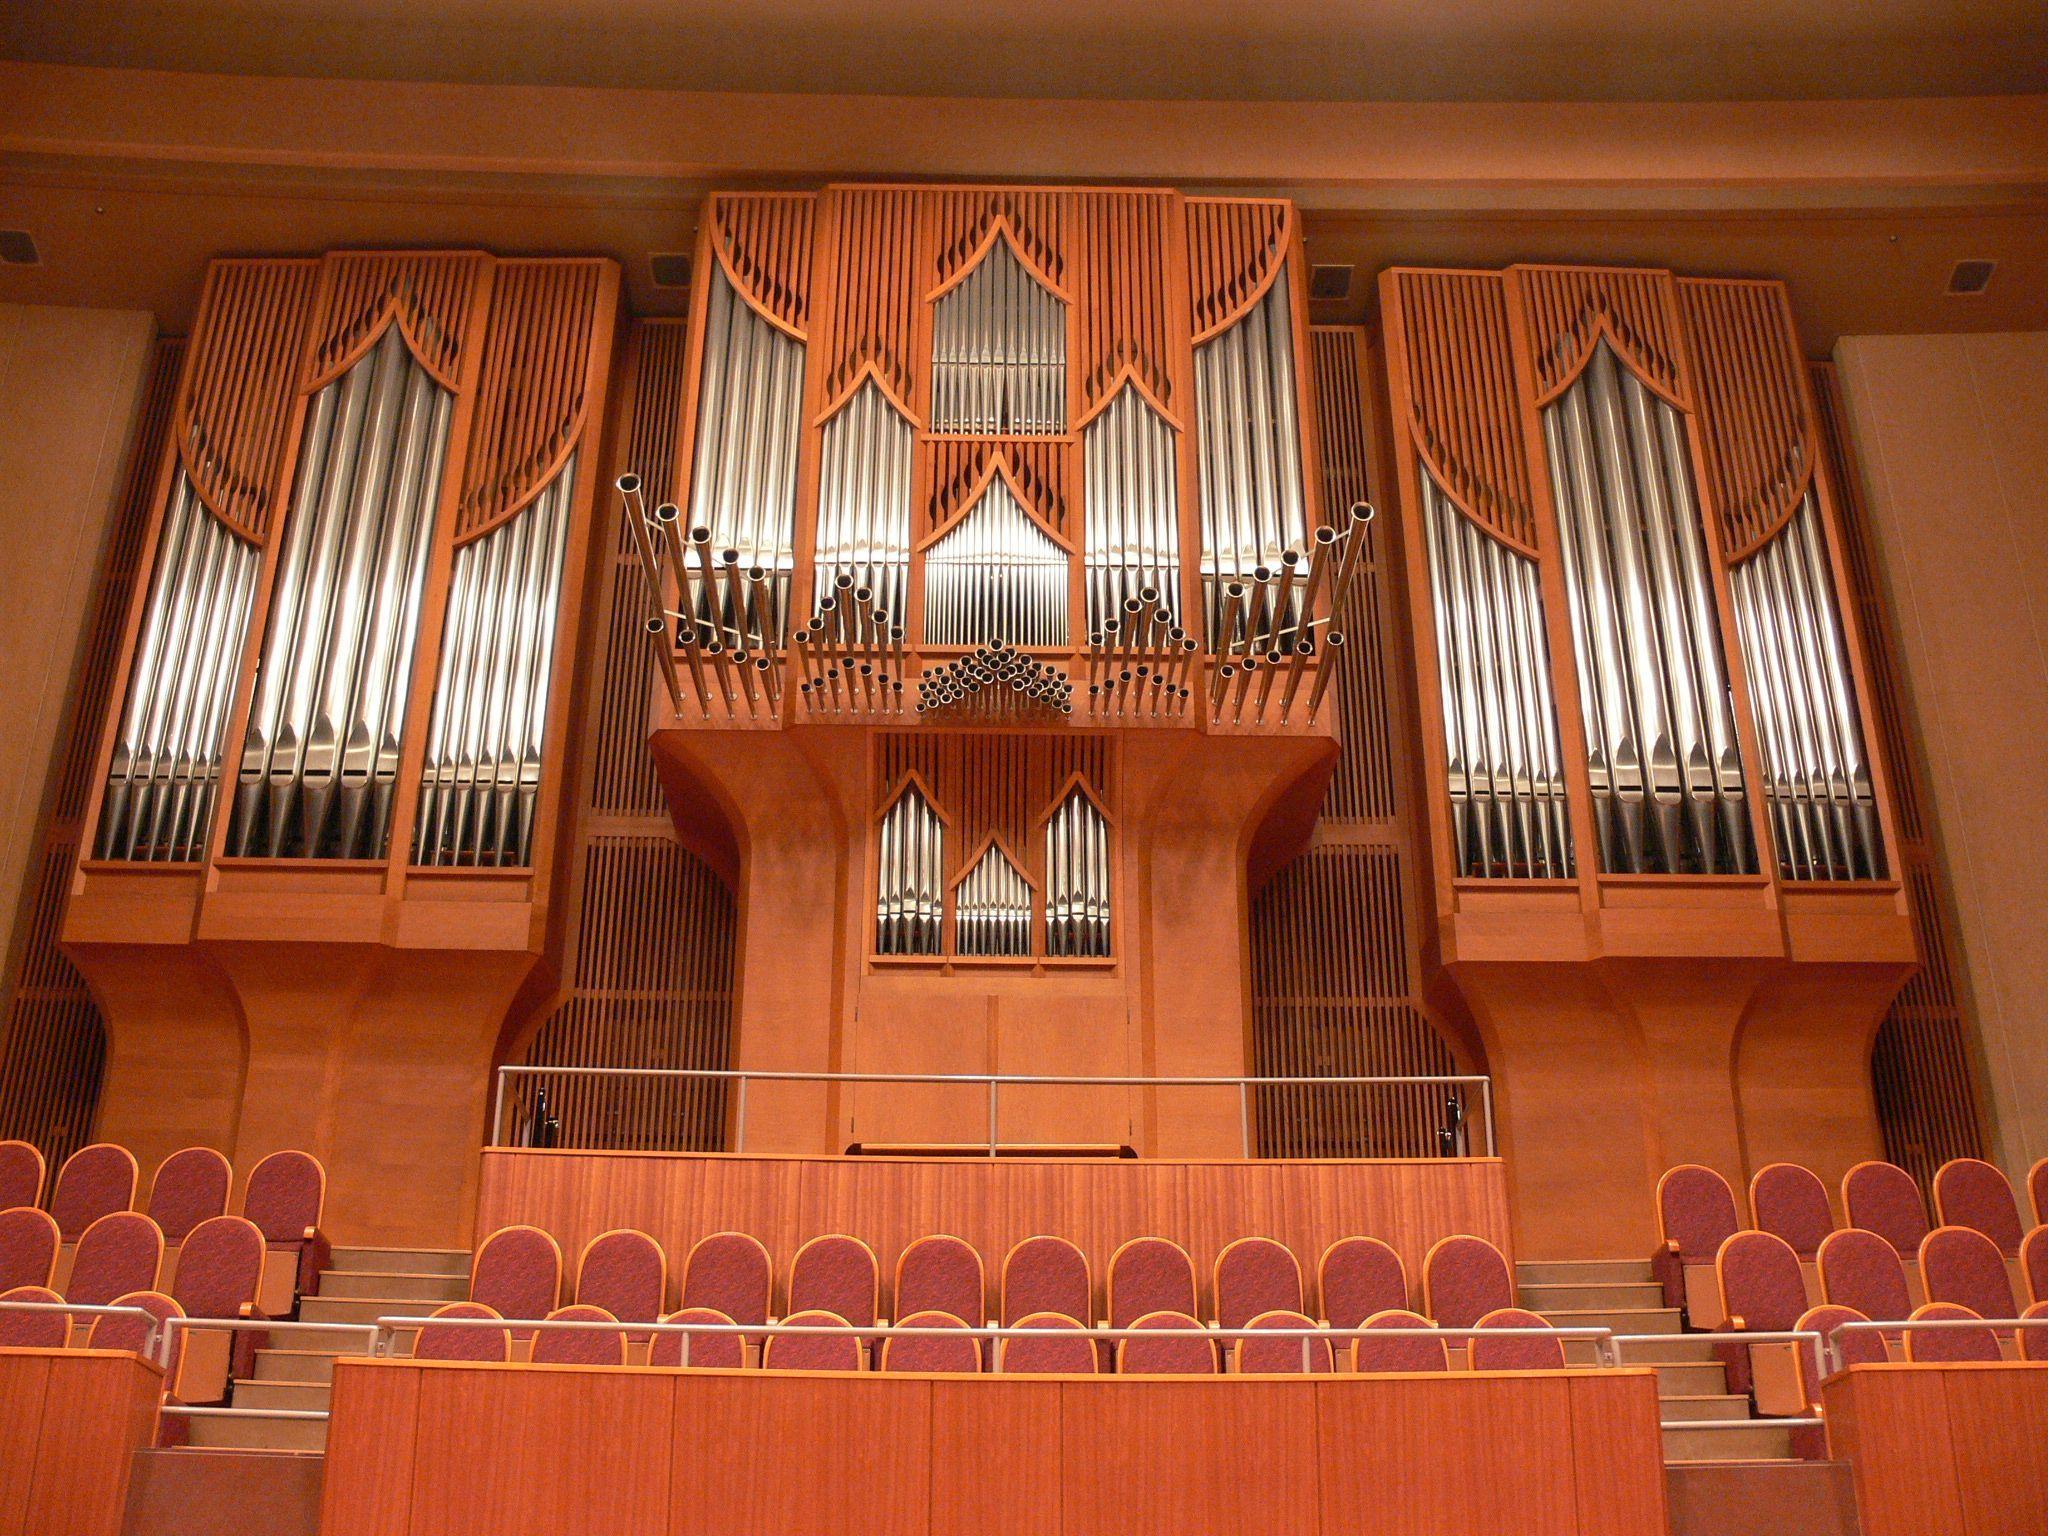 日本初のクラシック専用コンサートホール 聴衆を 包み込む 音楽の響きが 人々を魅了しつづけます 教育 文化施設 大成建設 Technology Solution テクノロジー ソリューション テクソル